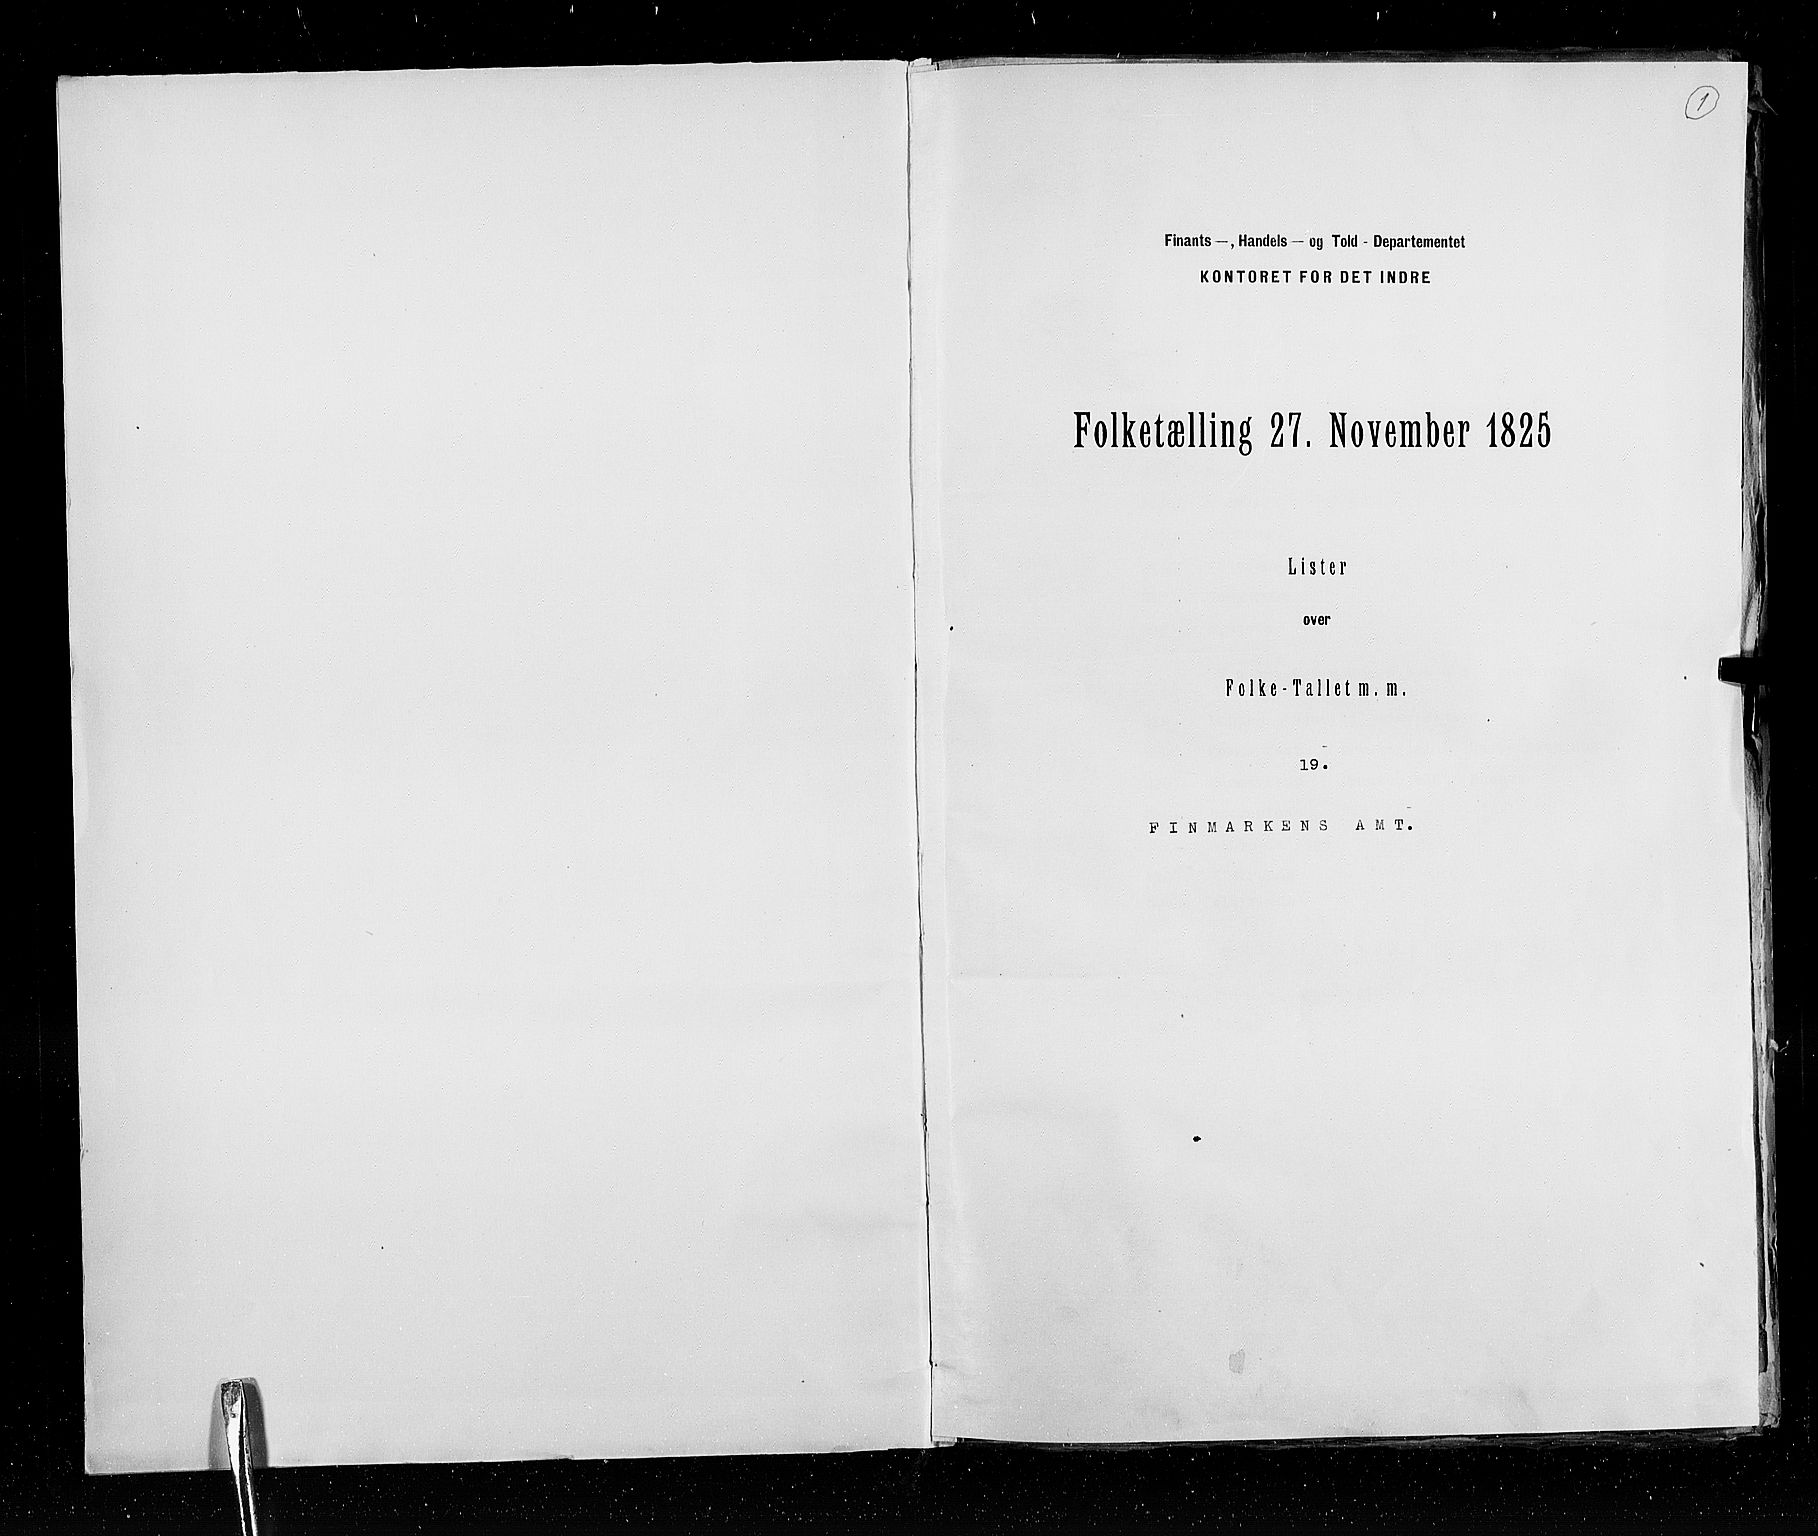 RA, Census 1825, vol. 19: Finnmarken amt, 1825, p. 1